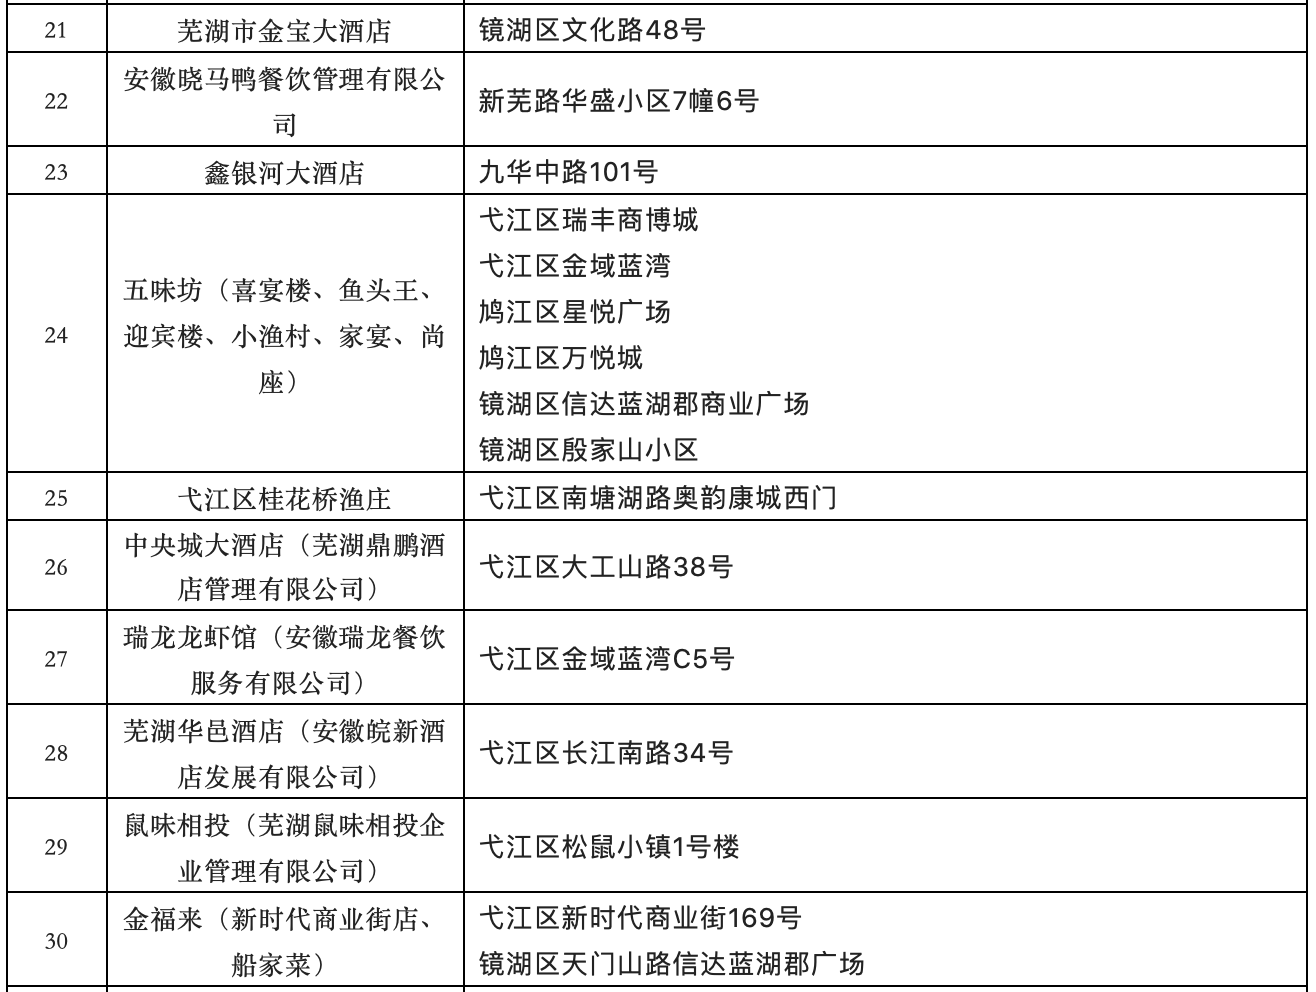 芜湖紫云英人才城市体验券住宿券首批使用商家名单